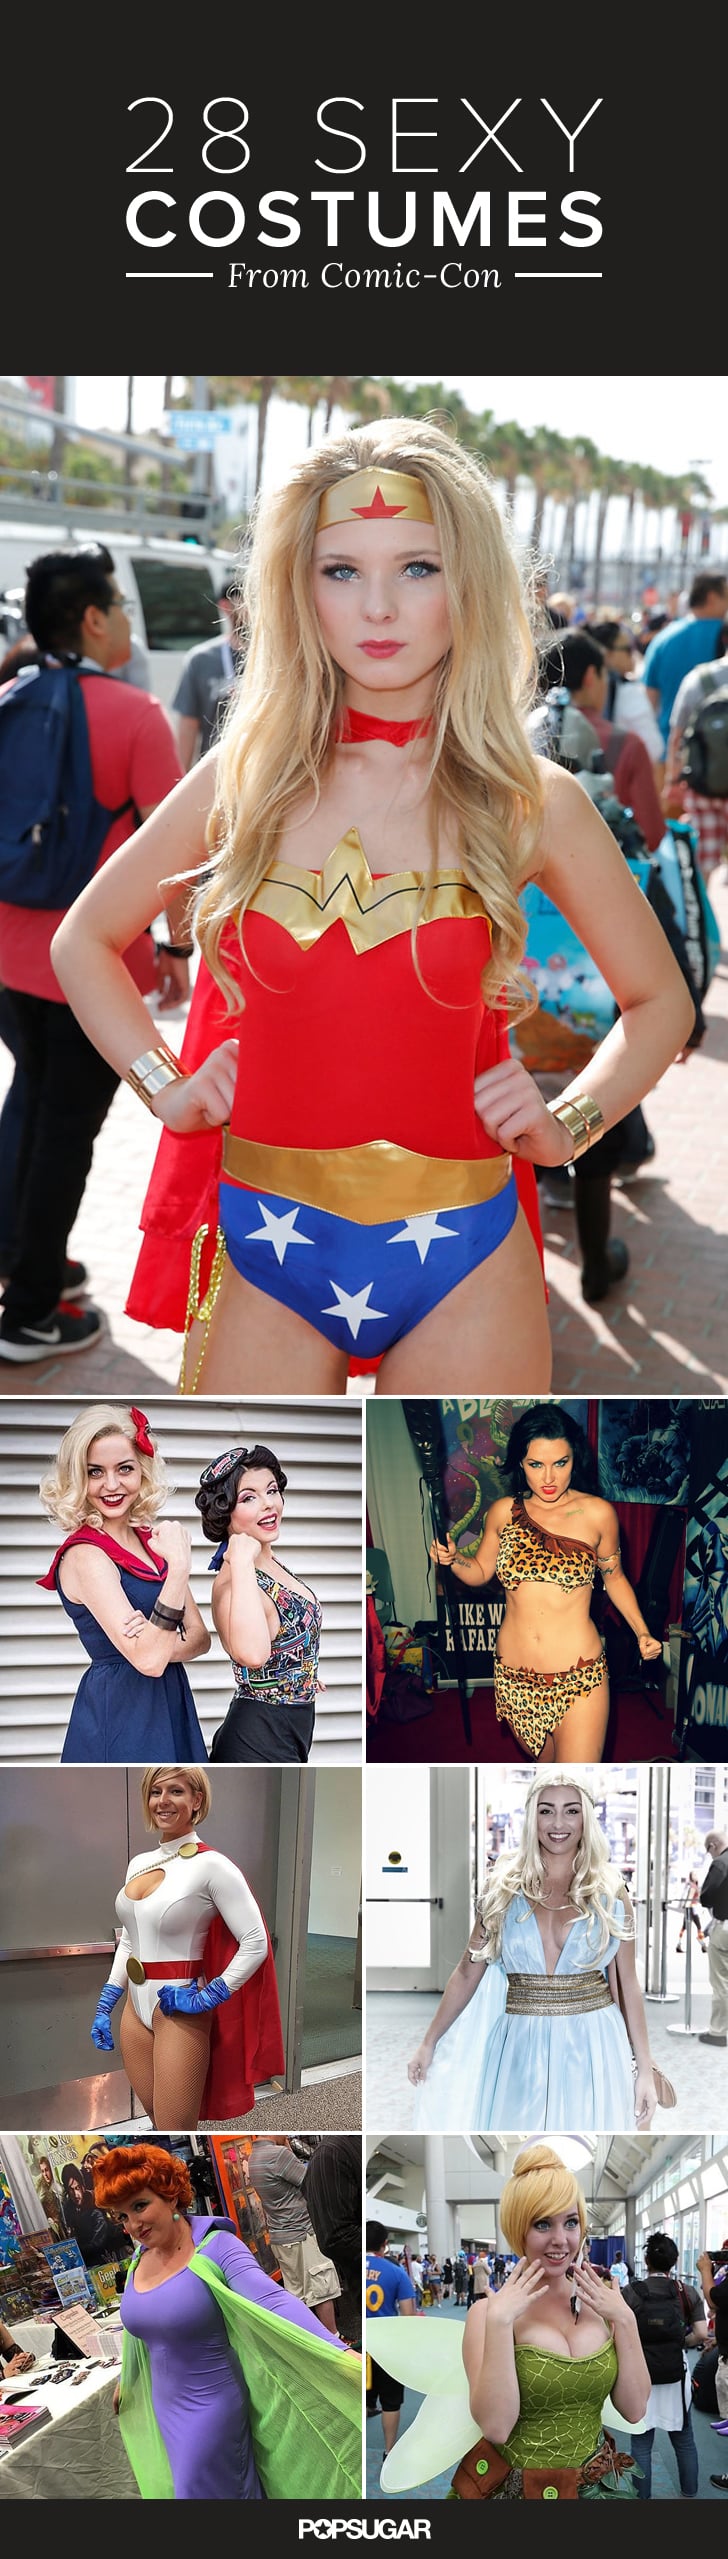 Sexy Costumes At Comic Con 2015 Popsugar Love And Sex Photo 31